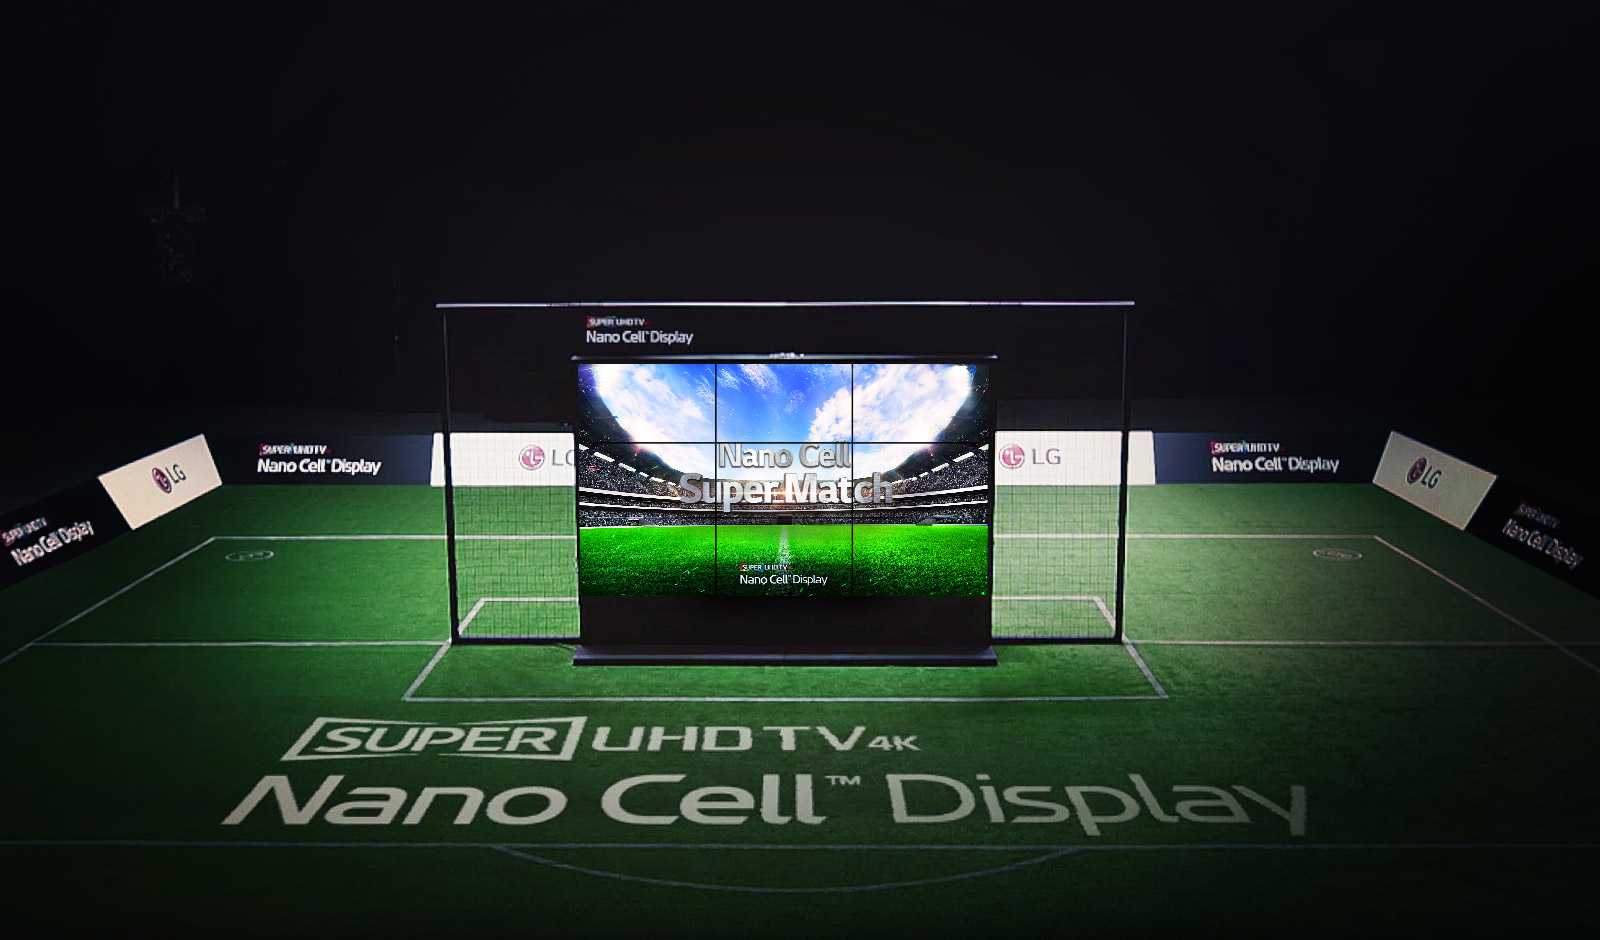 Nano Cell TV